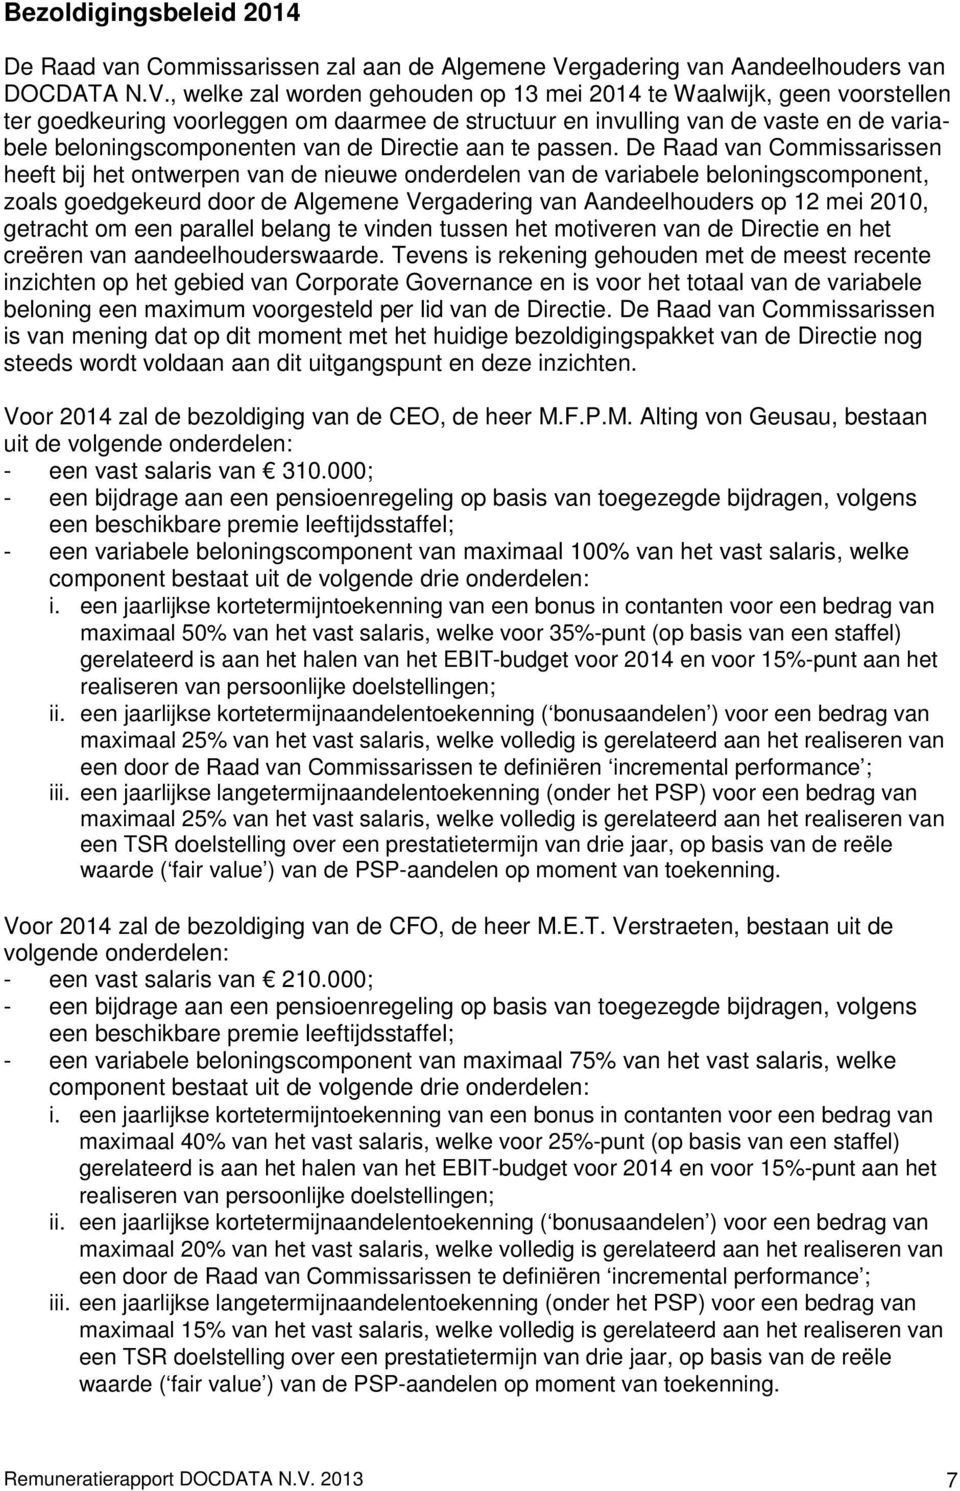 , welke zal worden gehouden op 13 mei 2014 te Waalwijk, geen voorstellen ter goedkeuring voorleggen om daarmee de structuur en invulling van de vaste en de variabele beloningscomponenten van de